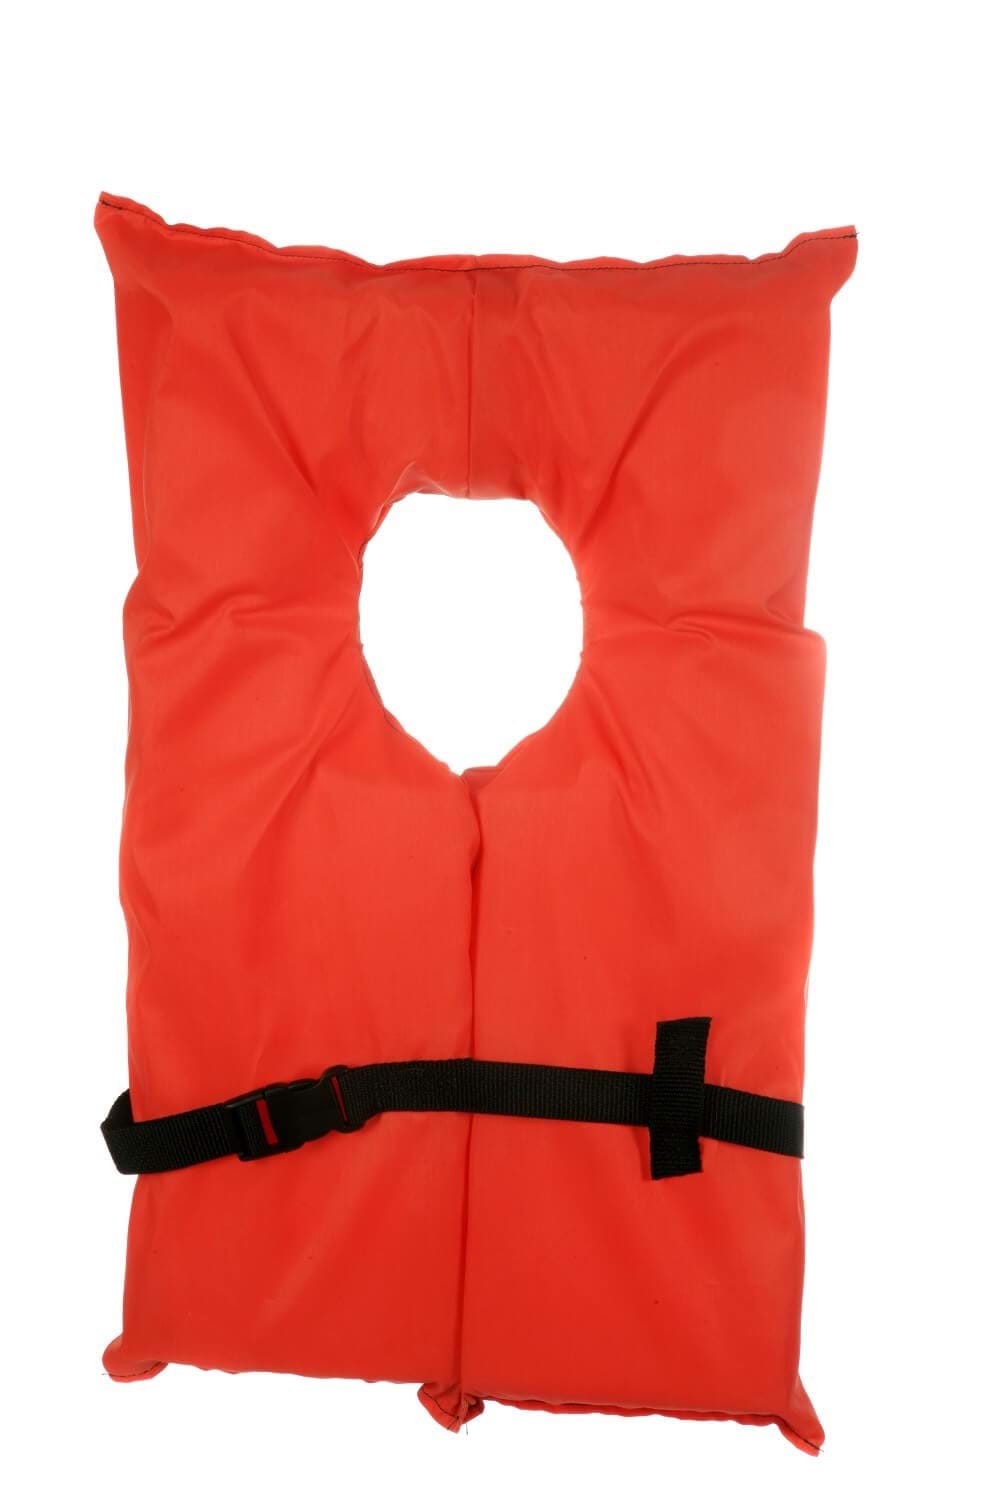 Standard orange life vest with clip